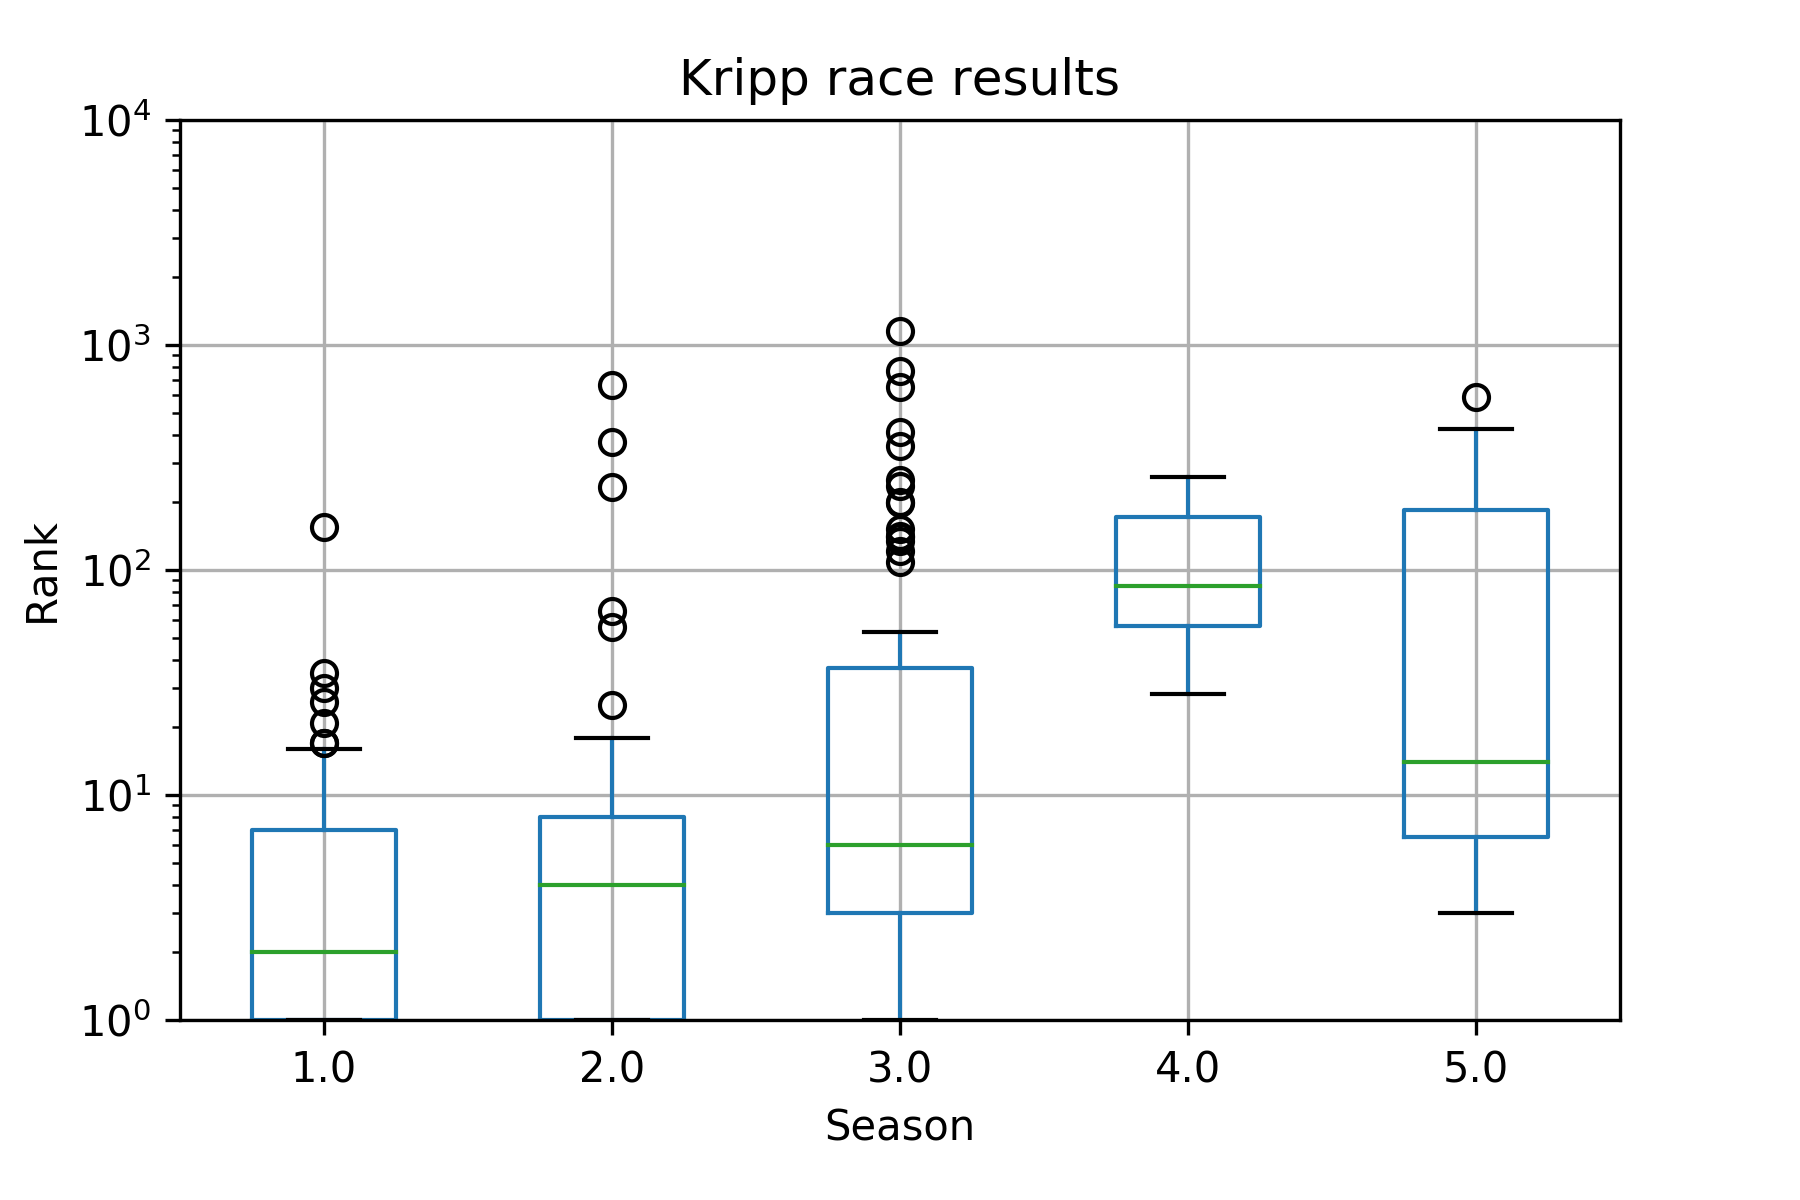 Kripp race consistency